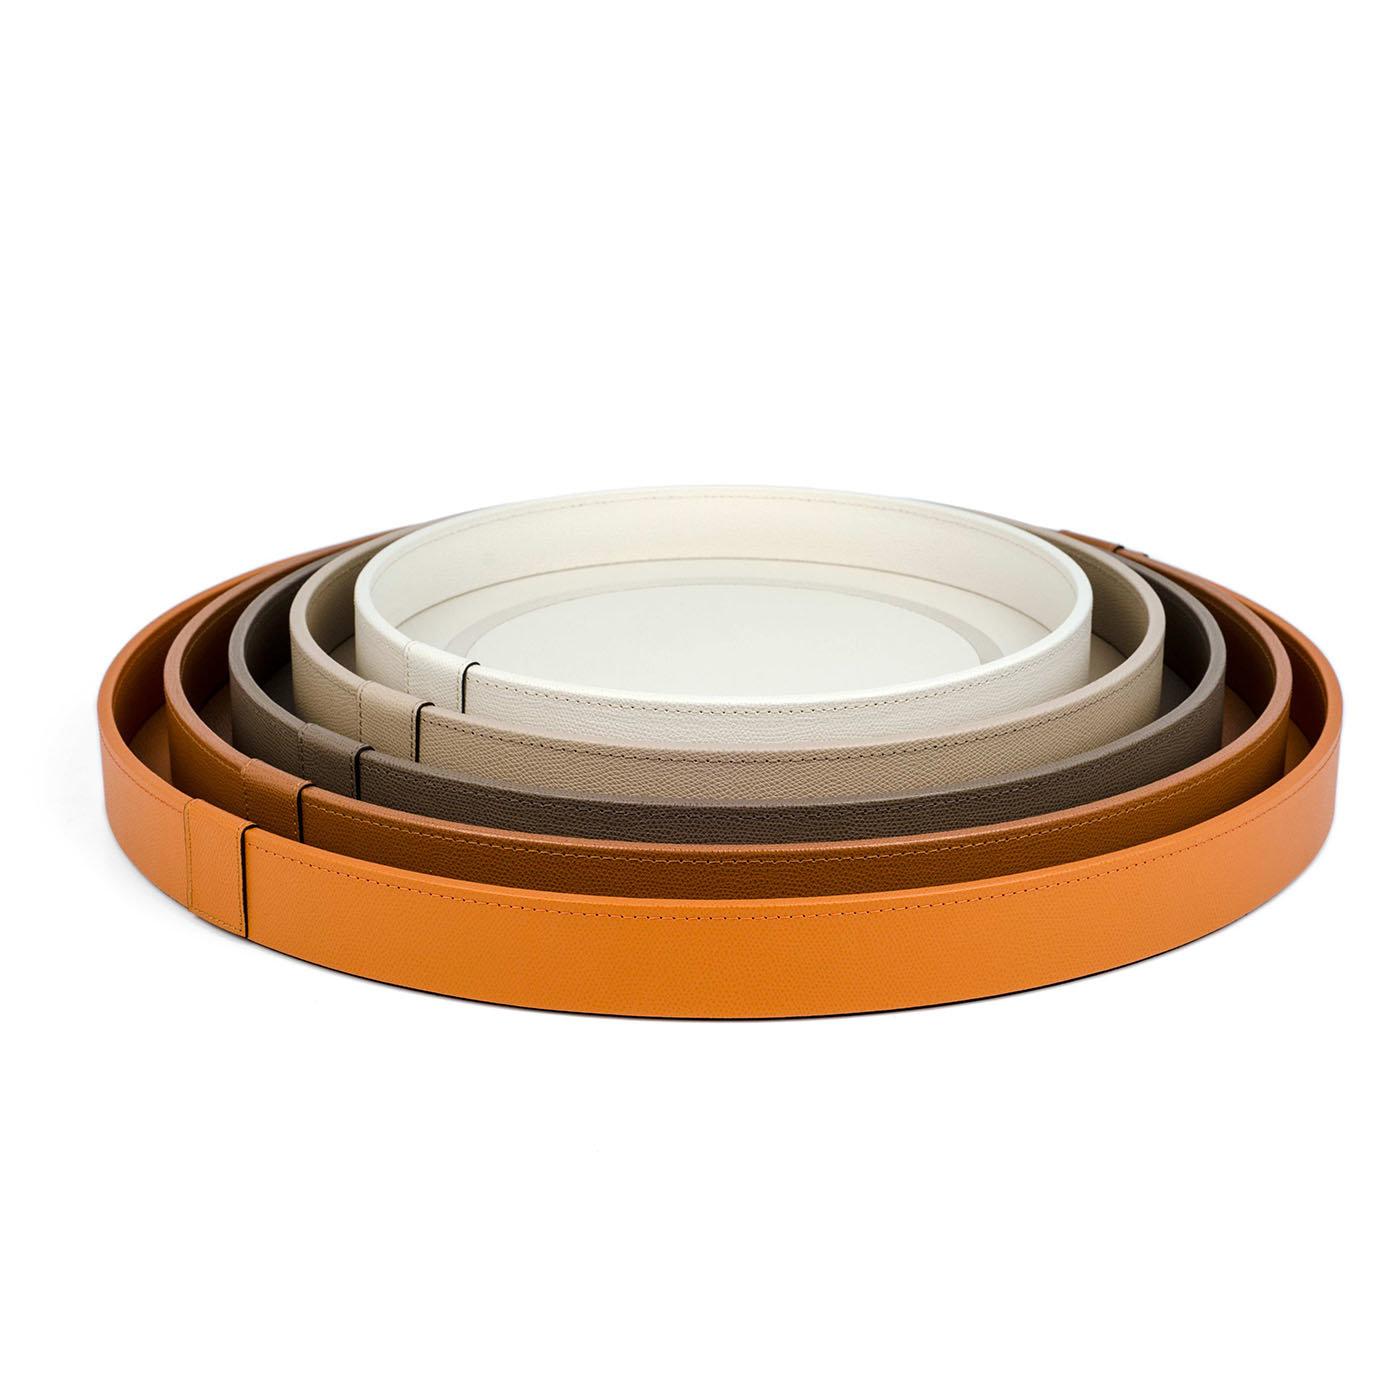 Ce plateau Lux est un accessoire exclusif revêtu de cuir de veau teinté orange. Sa teinte opaque et solide n'est interrompue que par un mince cercle chromé qui accentue la surface inférieure. La forme ronde, la teinte vive et le grain doux du cuir